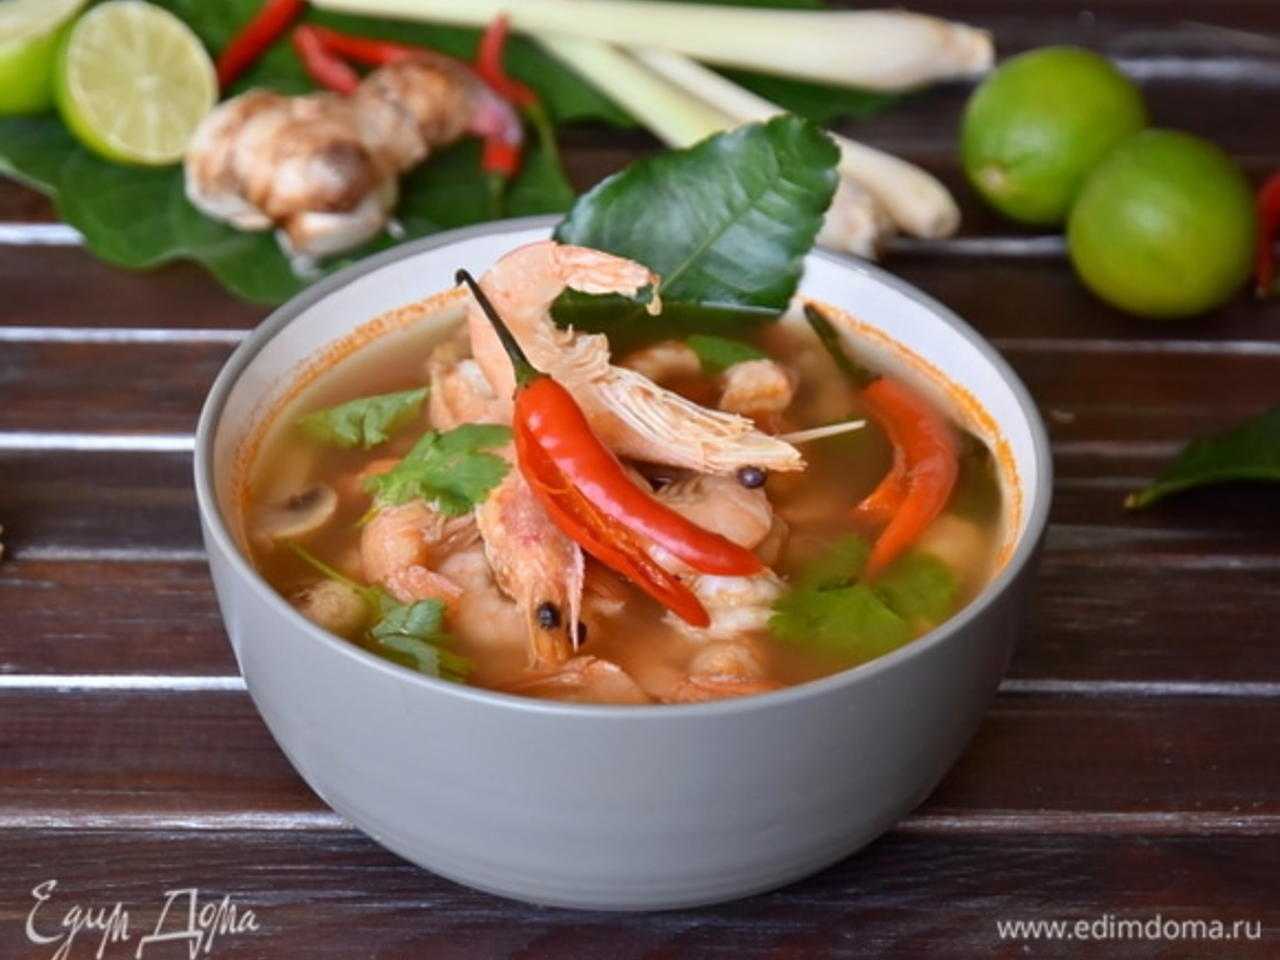 Суп тимьян с морепродуктами рецепт с фото